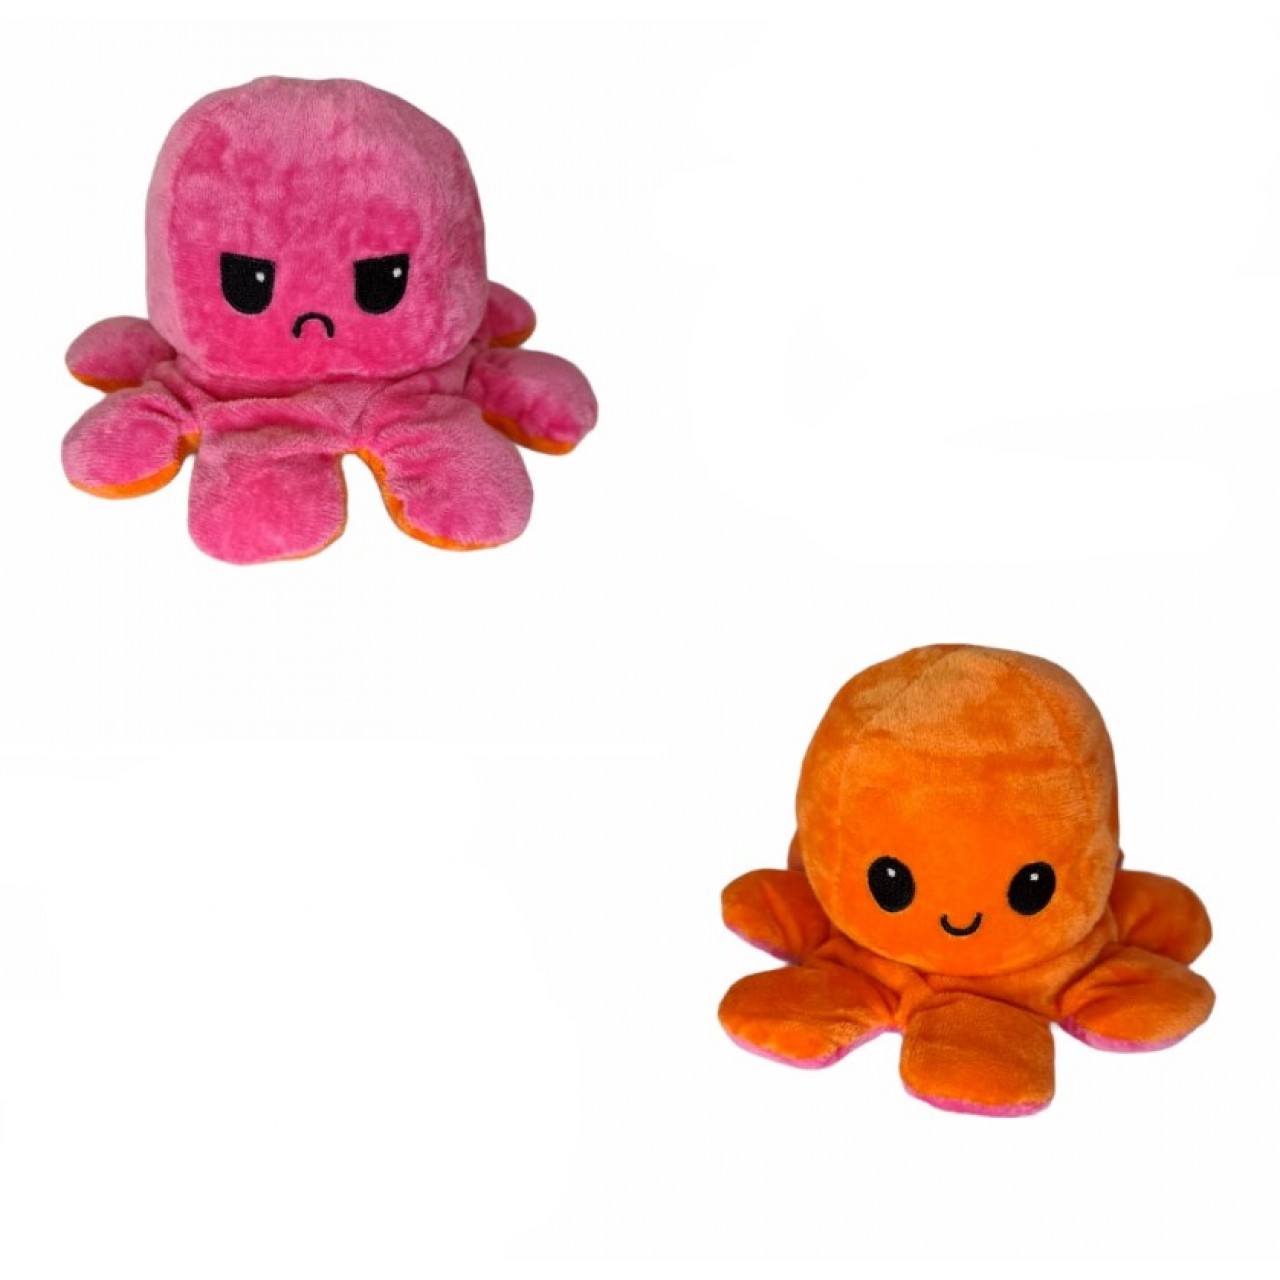 Χταπόδι διπλής όψης λούτρινο emotional reversible octopus plush 12 εκ - 5333 - Πορτοκαλί / Φούξια